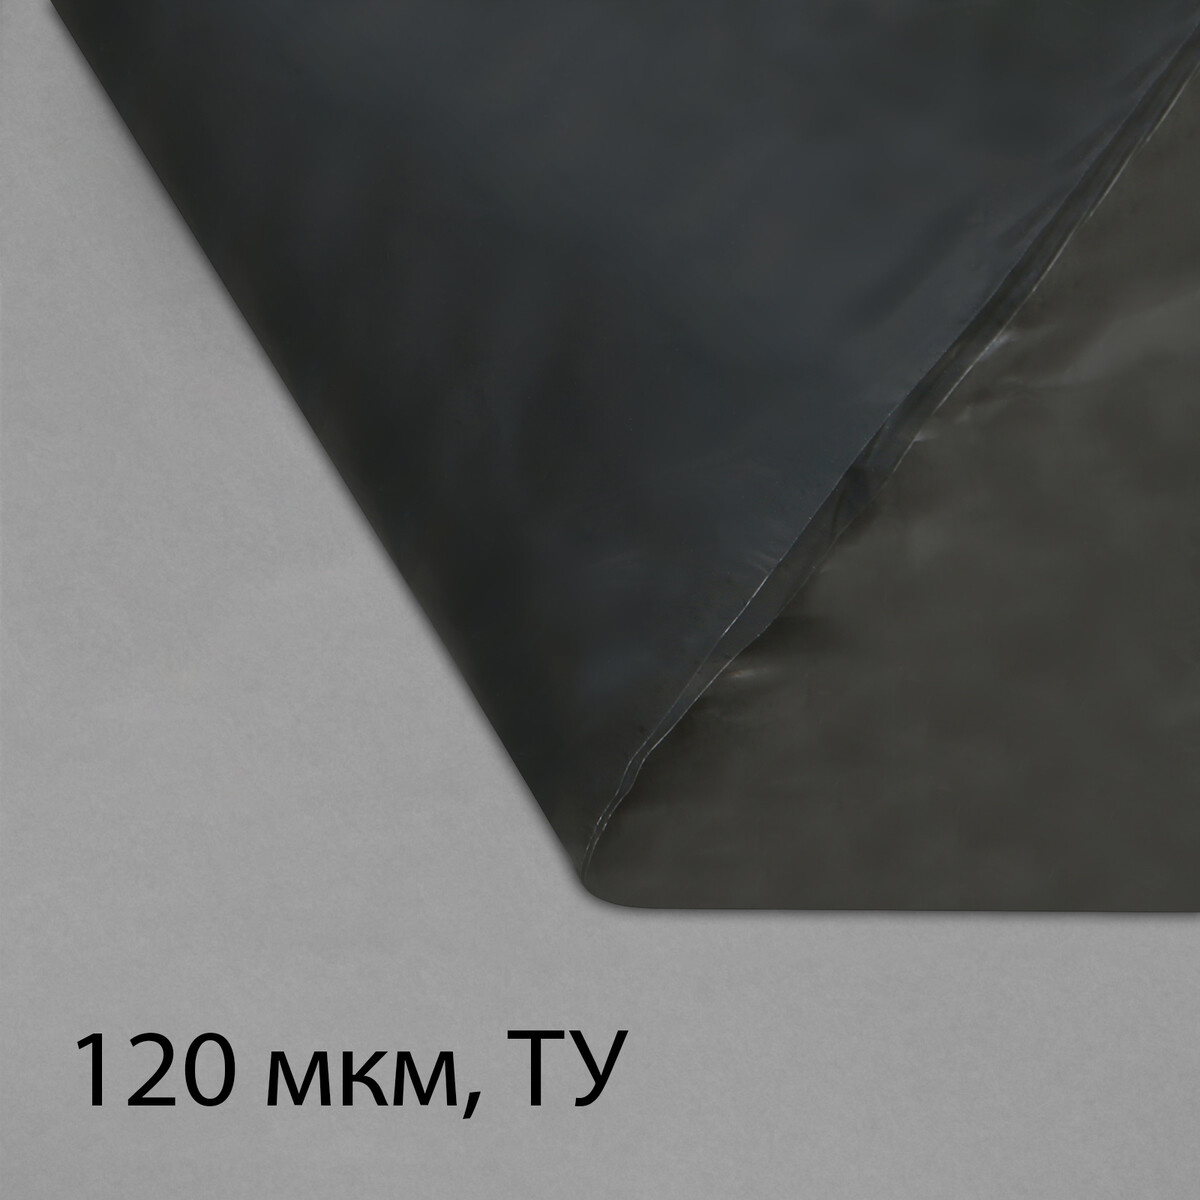 Пленка полиэтиленовая, техническая, толщина 120 мкм, 5 × 3 м, рукав (1,5 м × 2), черная, 2 сорт, эконом 50 % пленка полиэтиленовая техническая 80 мкм черная длина 10 м ширина 3 м рукав 1 5 × 2 м эконом 50%